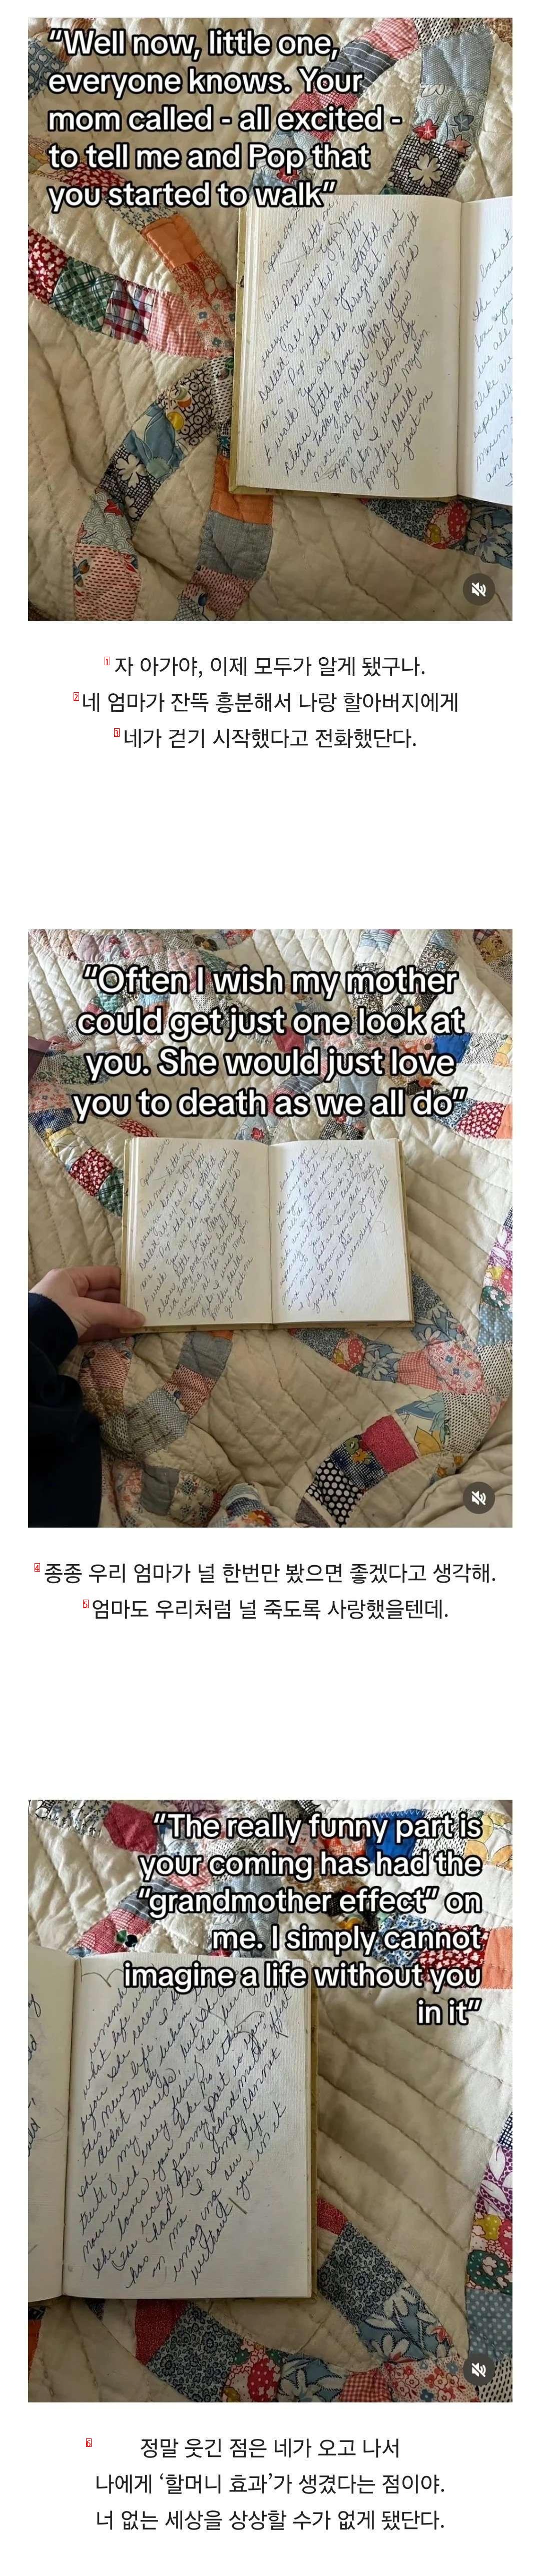 祖母が亡くなった後、祖母が私のことを書いた日記を見つけた